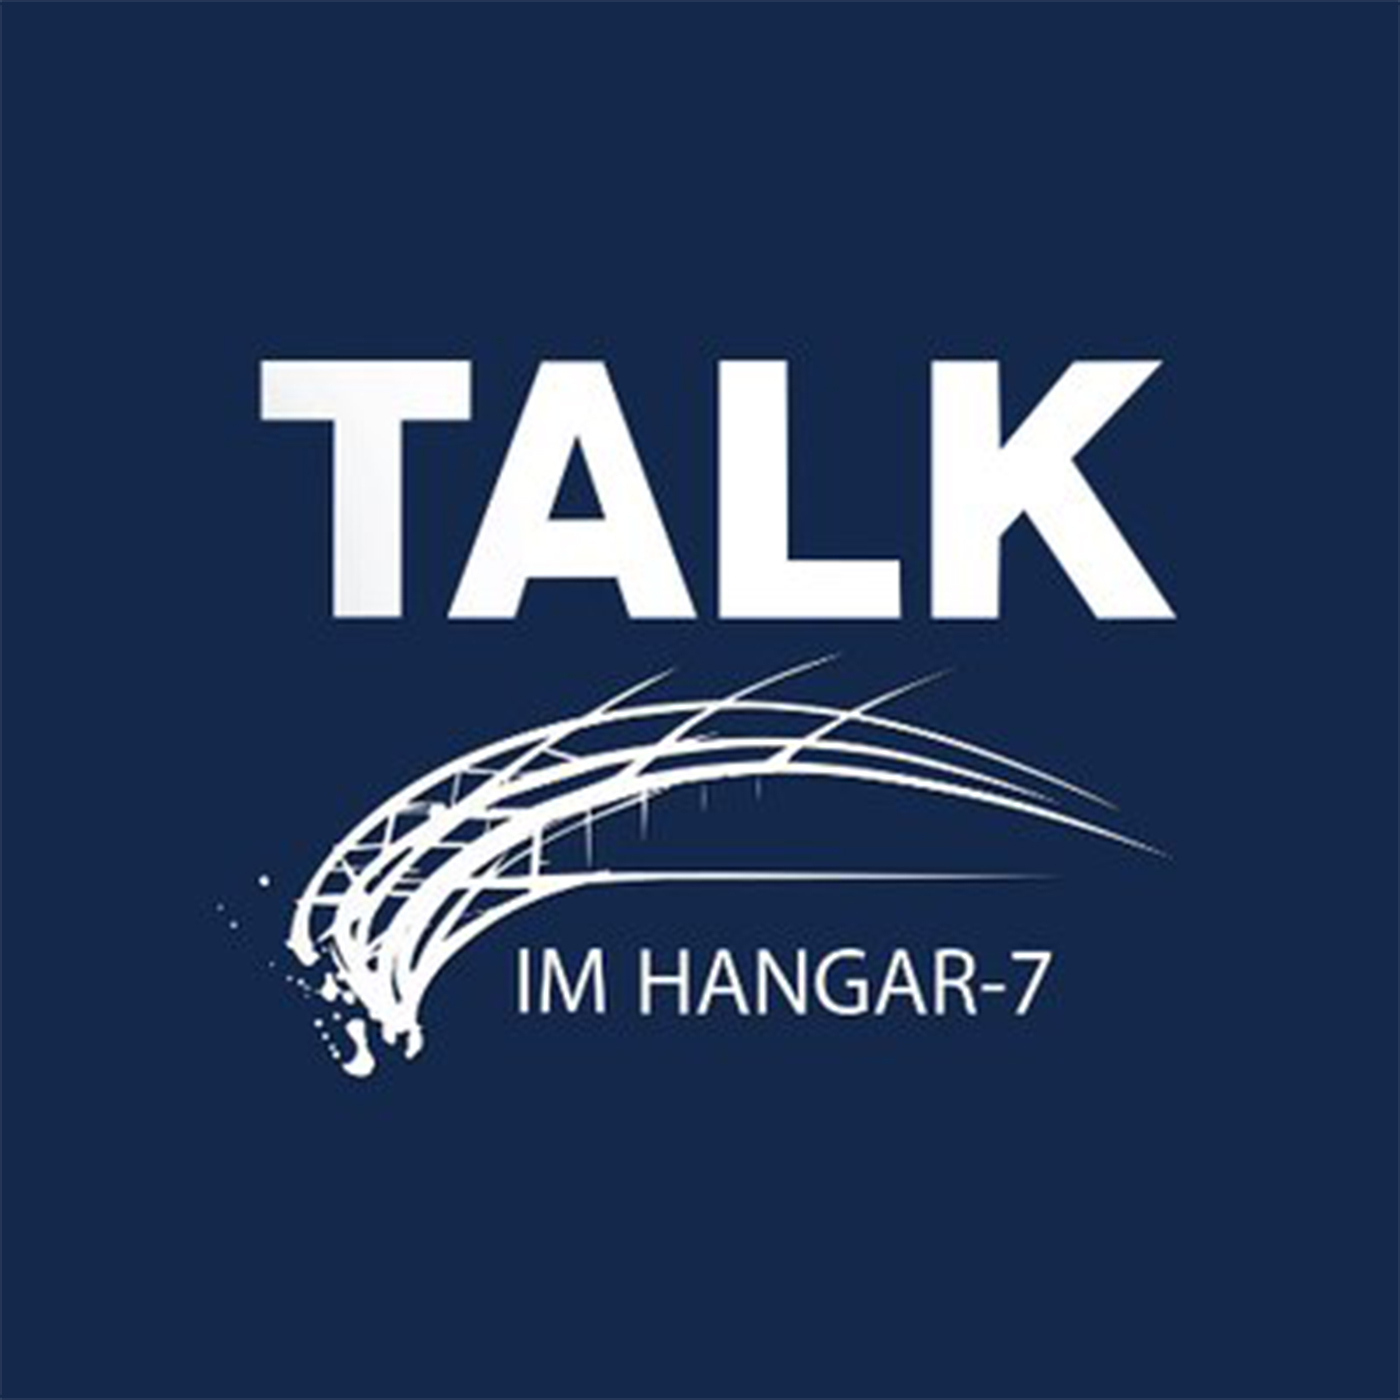 Talk im Hangar-7: Generation Klimapanik - Kleben, um zu leben?